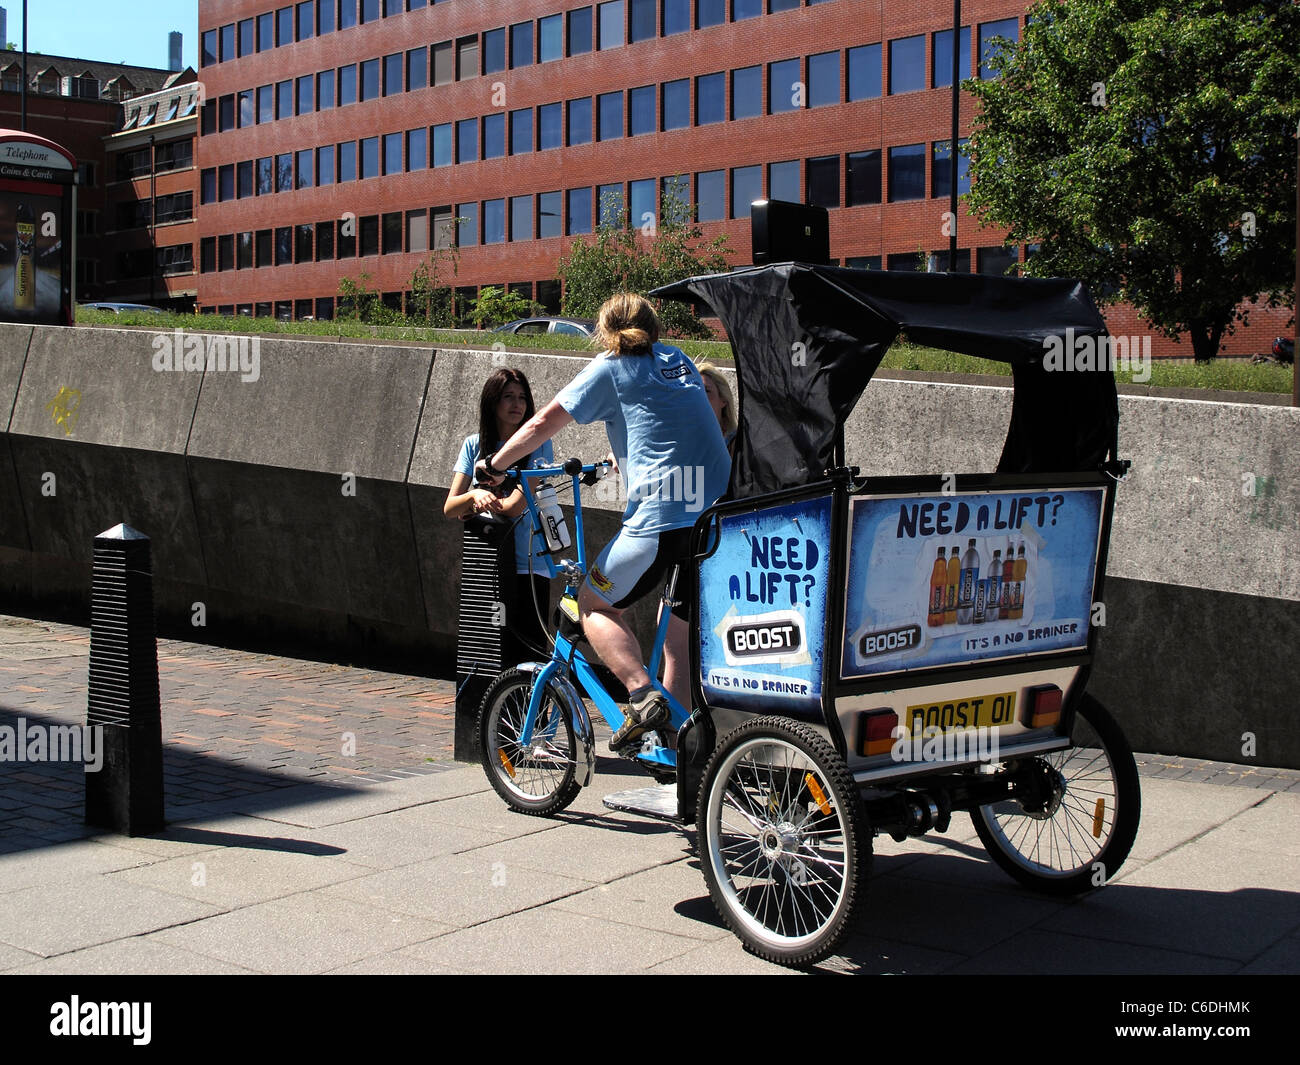 Un homme monté sur roues trois pousse-pousse style comme une aide la publicité promotionnelle Sheffield South Yorkshire Angleterre Banque D'Images